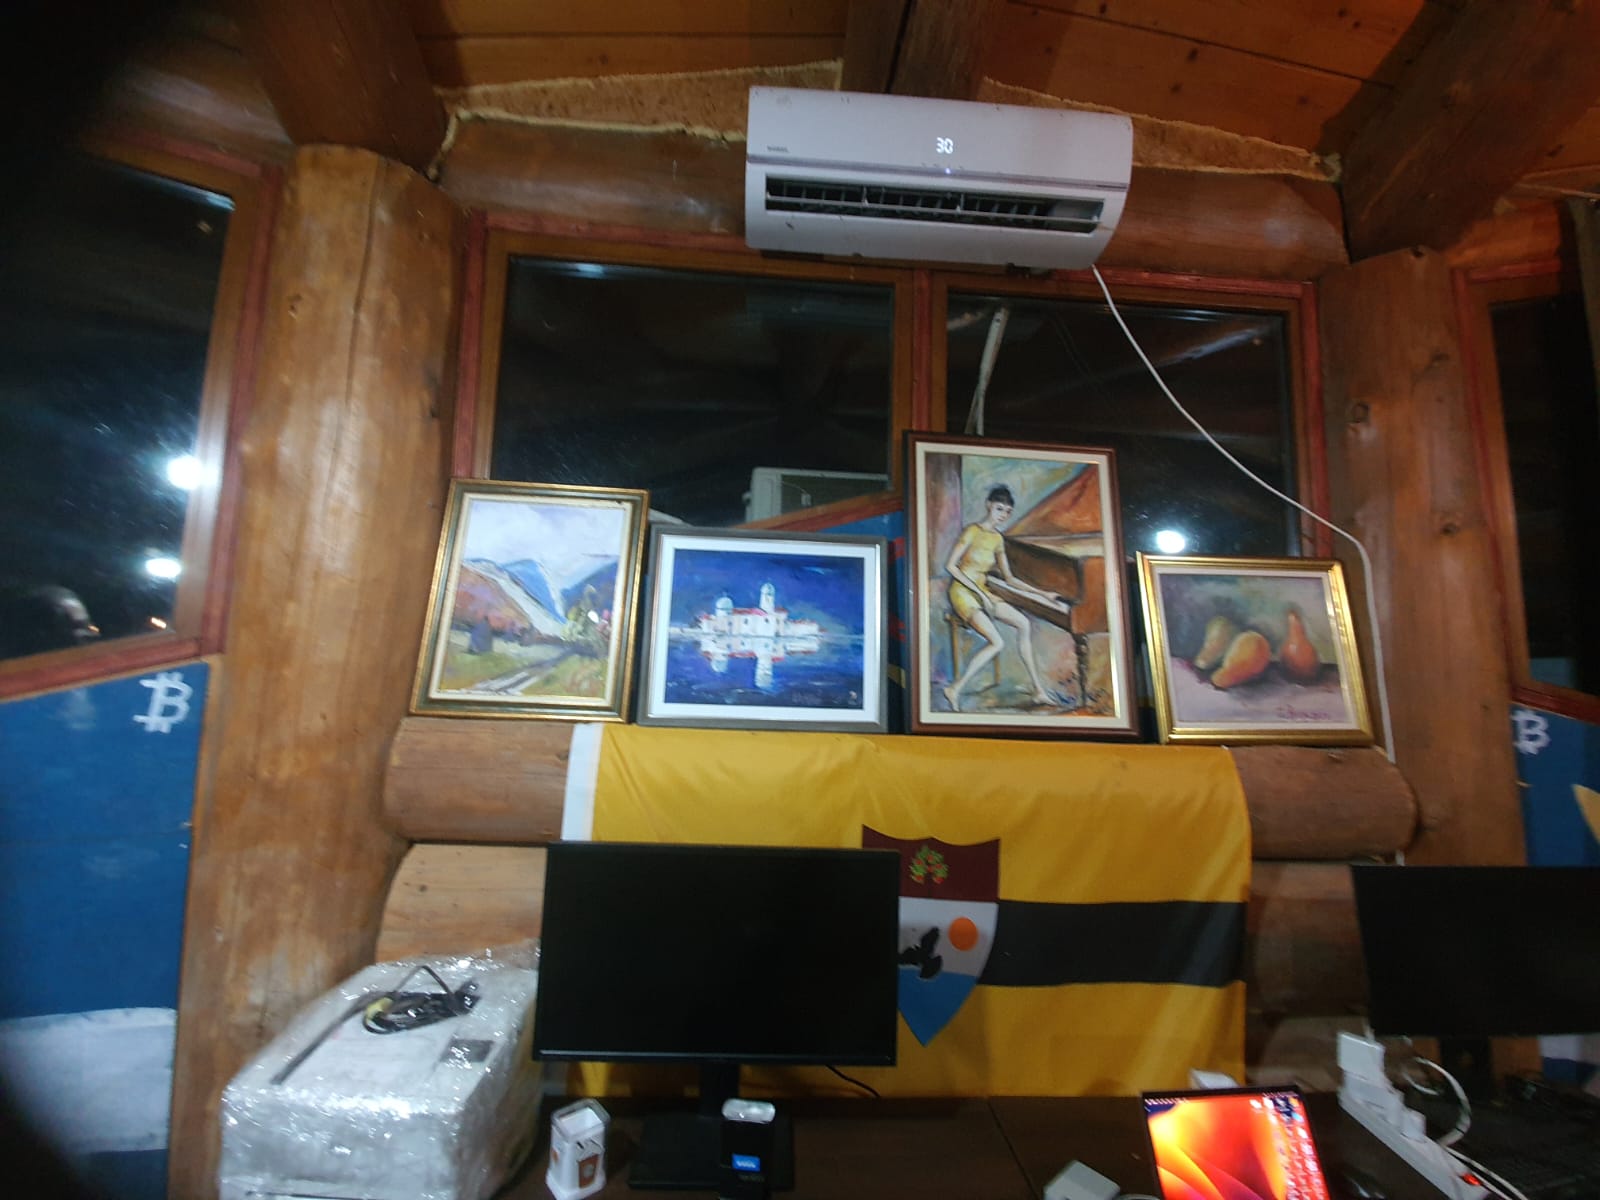 Либерленд, государство виртуальное и реальное. Атмосфера